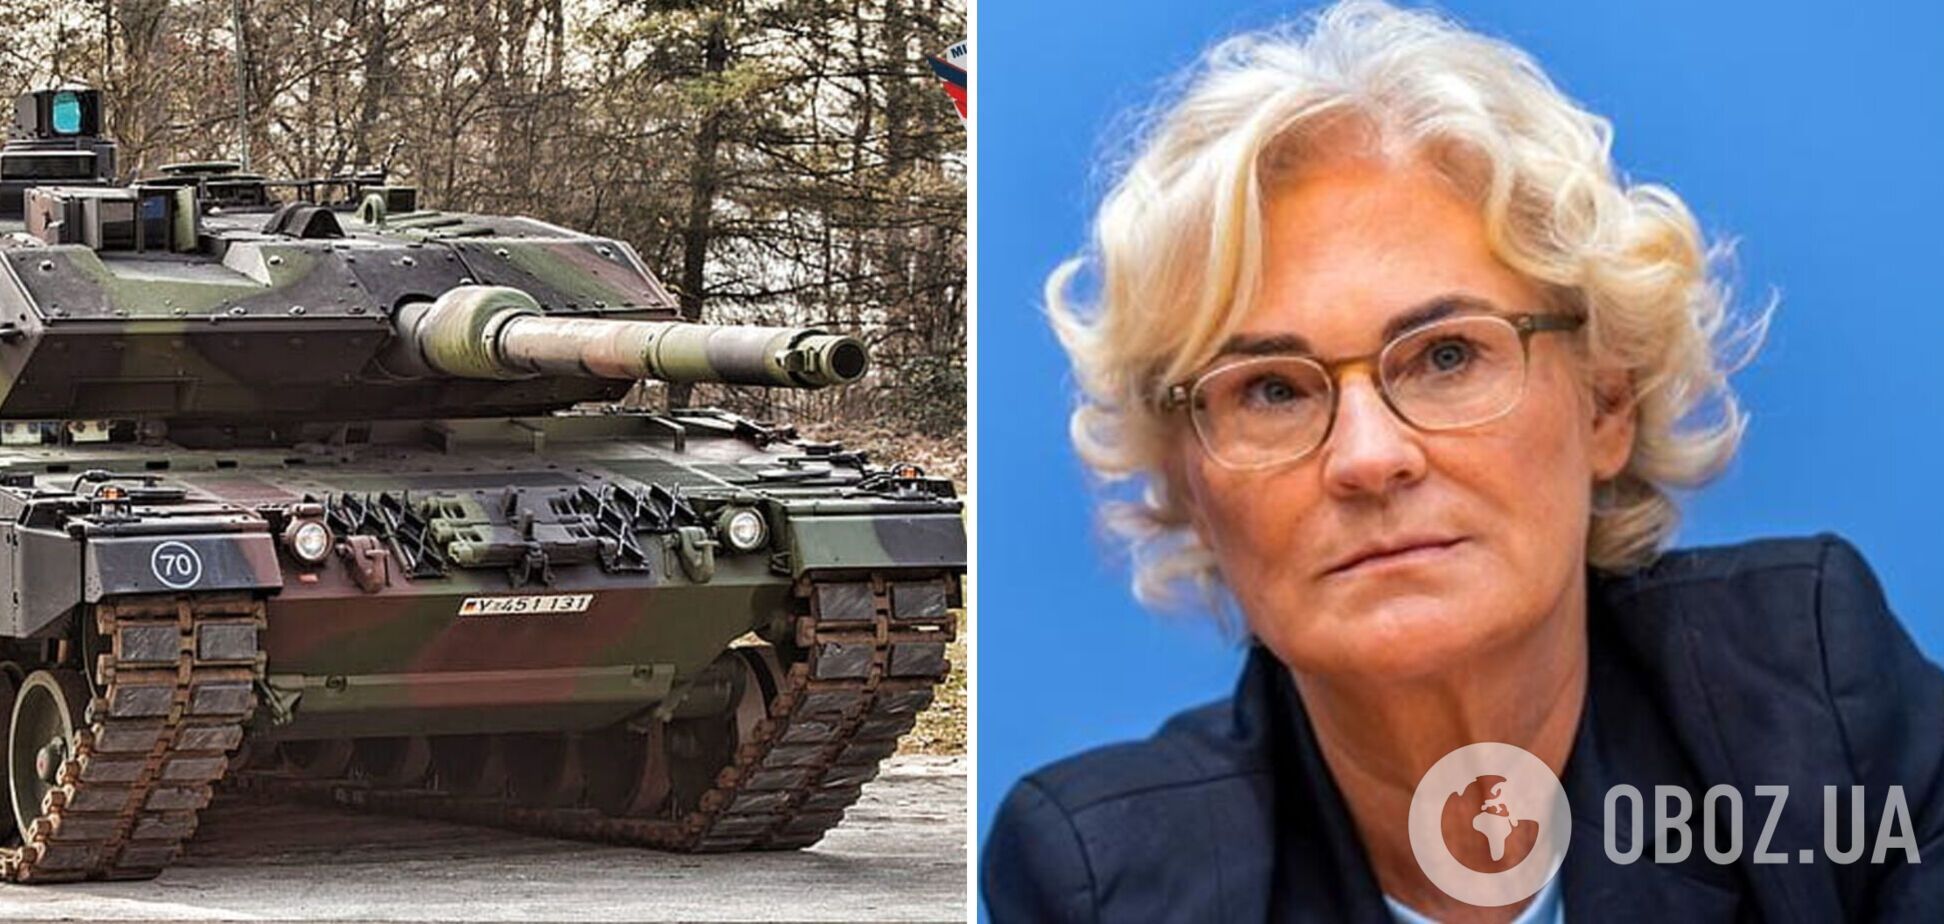 Ламбрехт за неделю до отставки запретила проверку запасов танков в Германии: СМИ раскрыли громкие детали